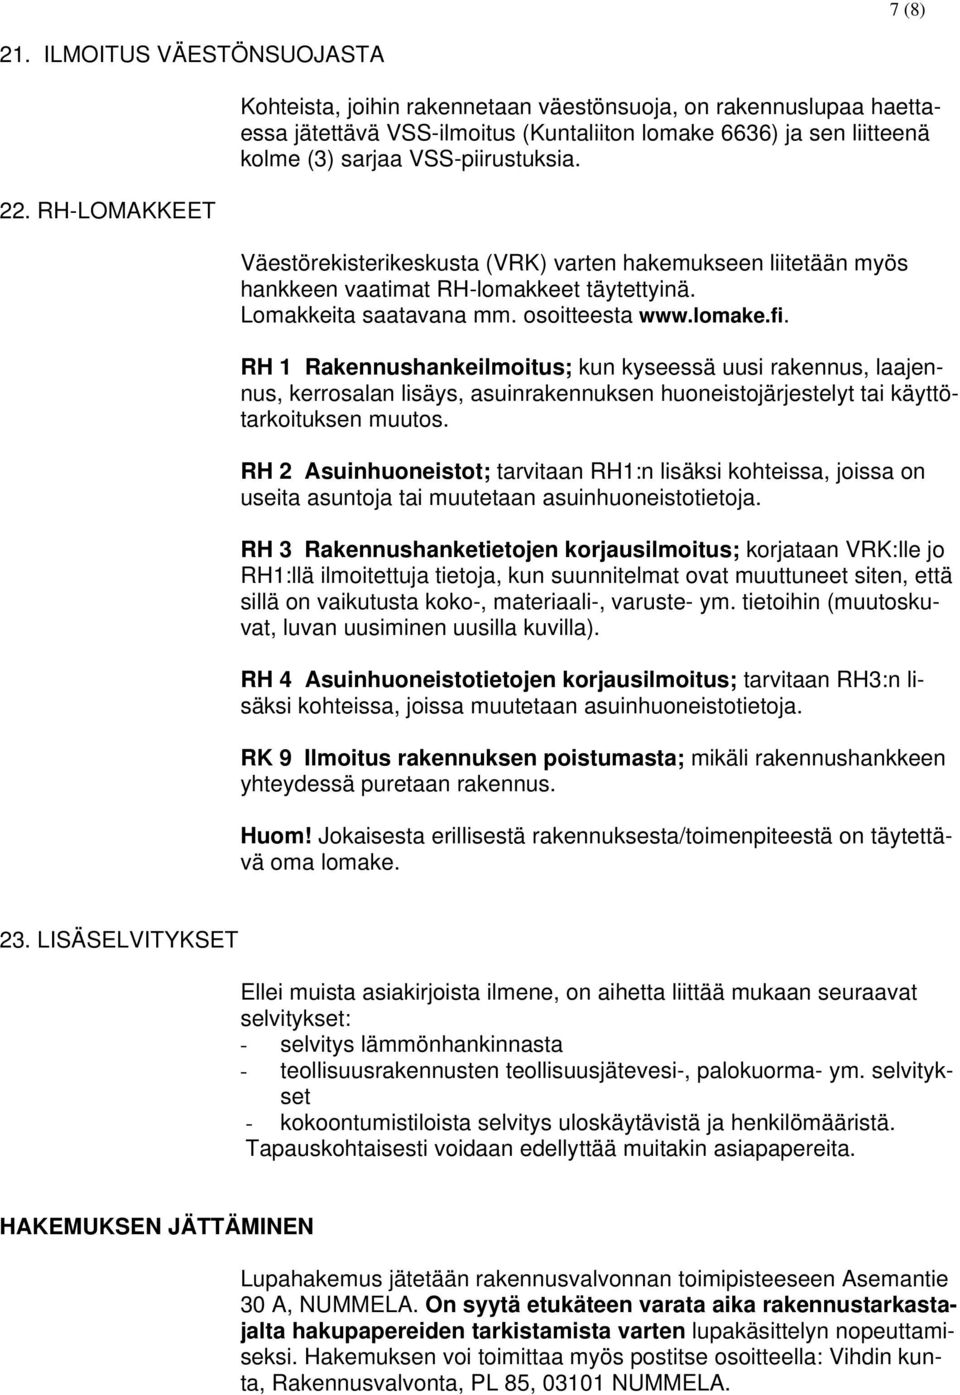 Väestörekisterikeskusta (VRK) varten hakemukseen liitetään myös hankkeen vaatimat RH-lomakkeet täytettyinä. Lomakkeita saatavana mm. osoitteesta www.lomake.fi.